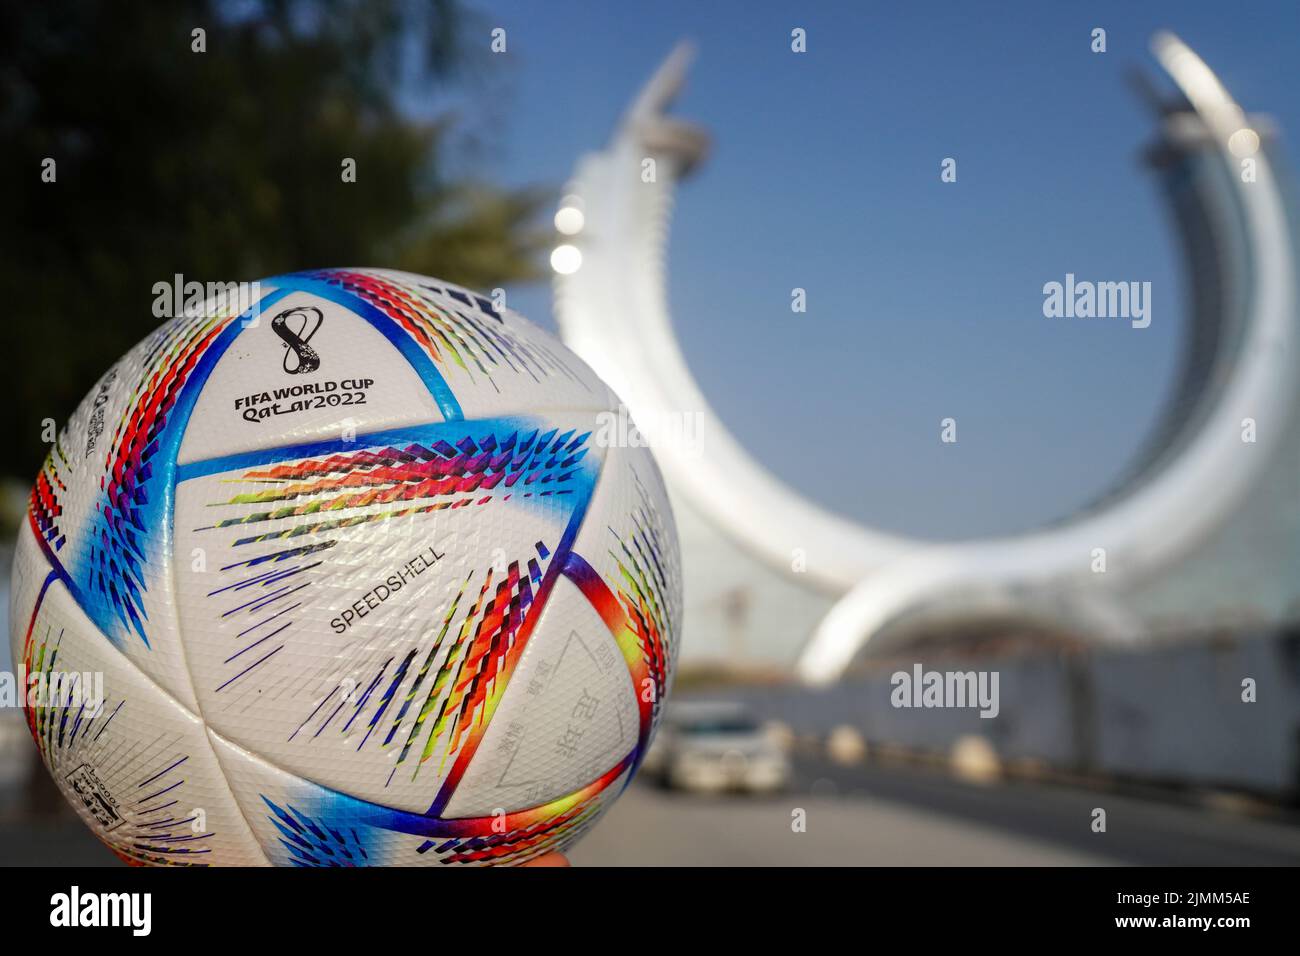 Il pallone ufficiale della Coppa del mondo FIFA Qatar 2022, Adidas al Rihla, a Doha, Qatar Foto Stock